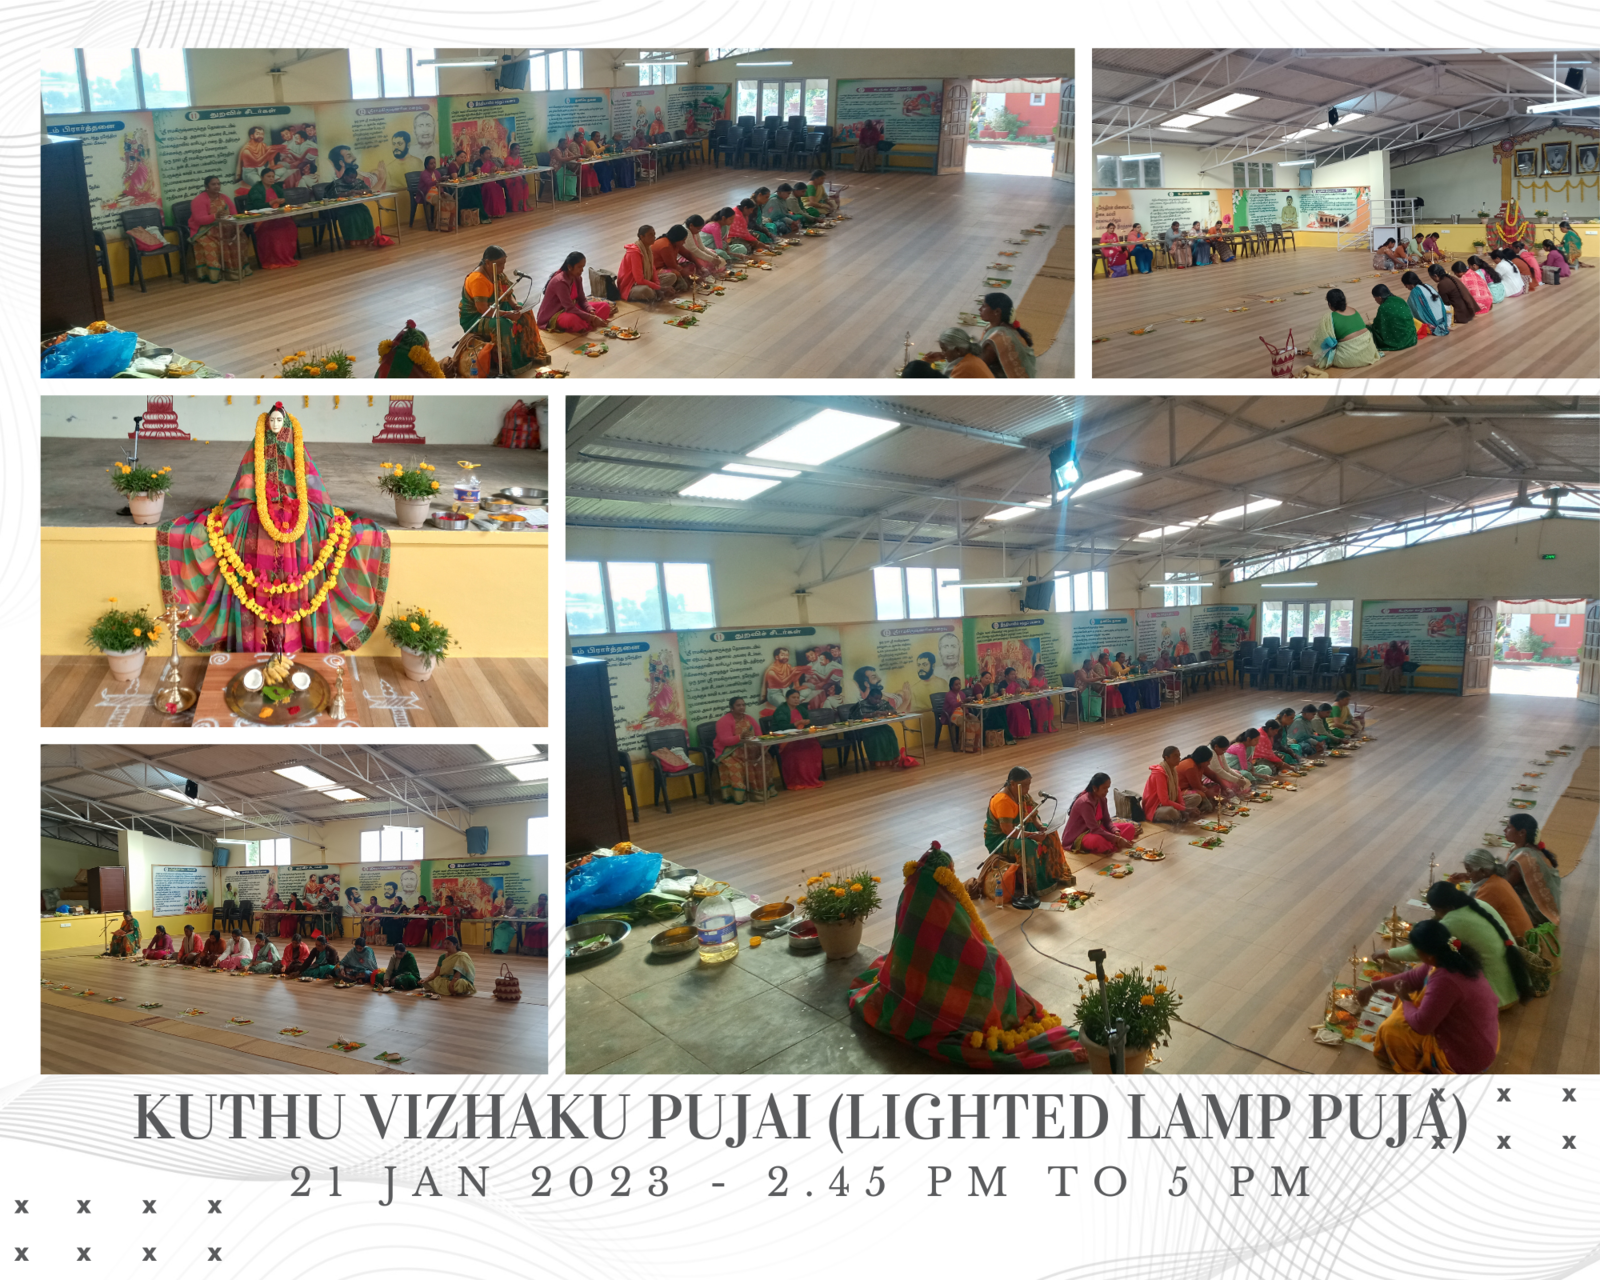 Lighted Lamp Puja (Kuthu Vizhaku Pujai)